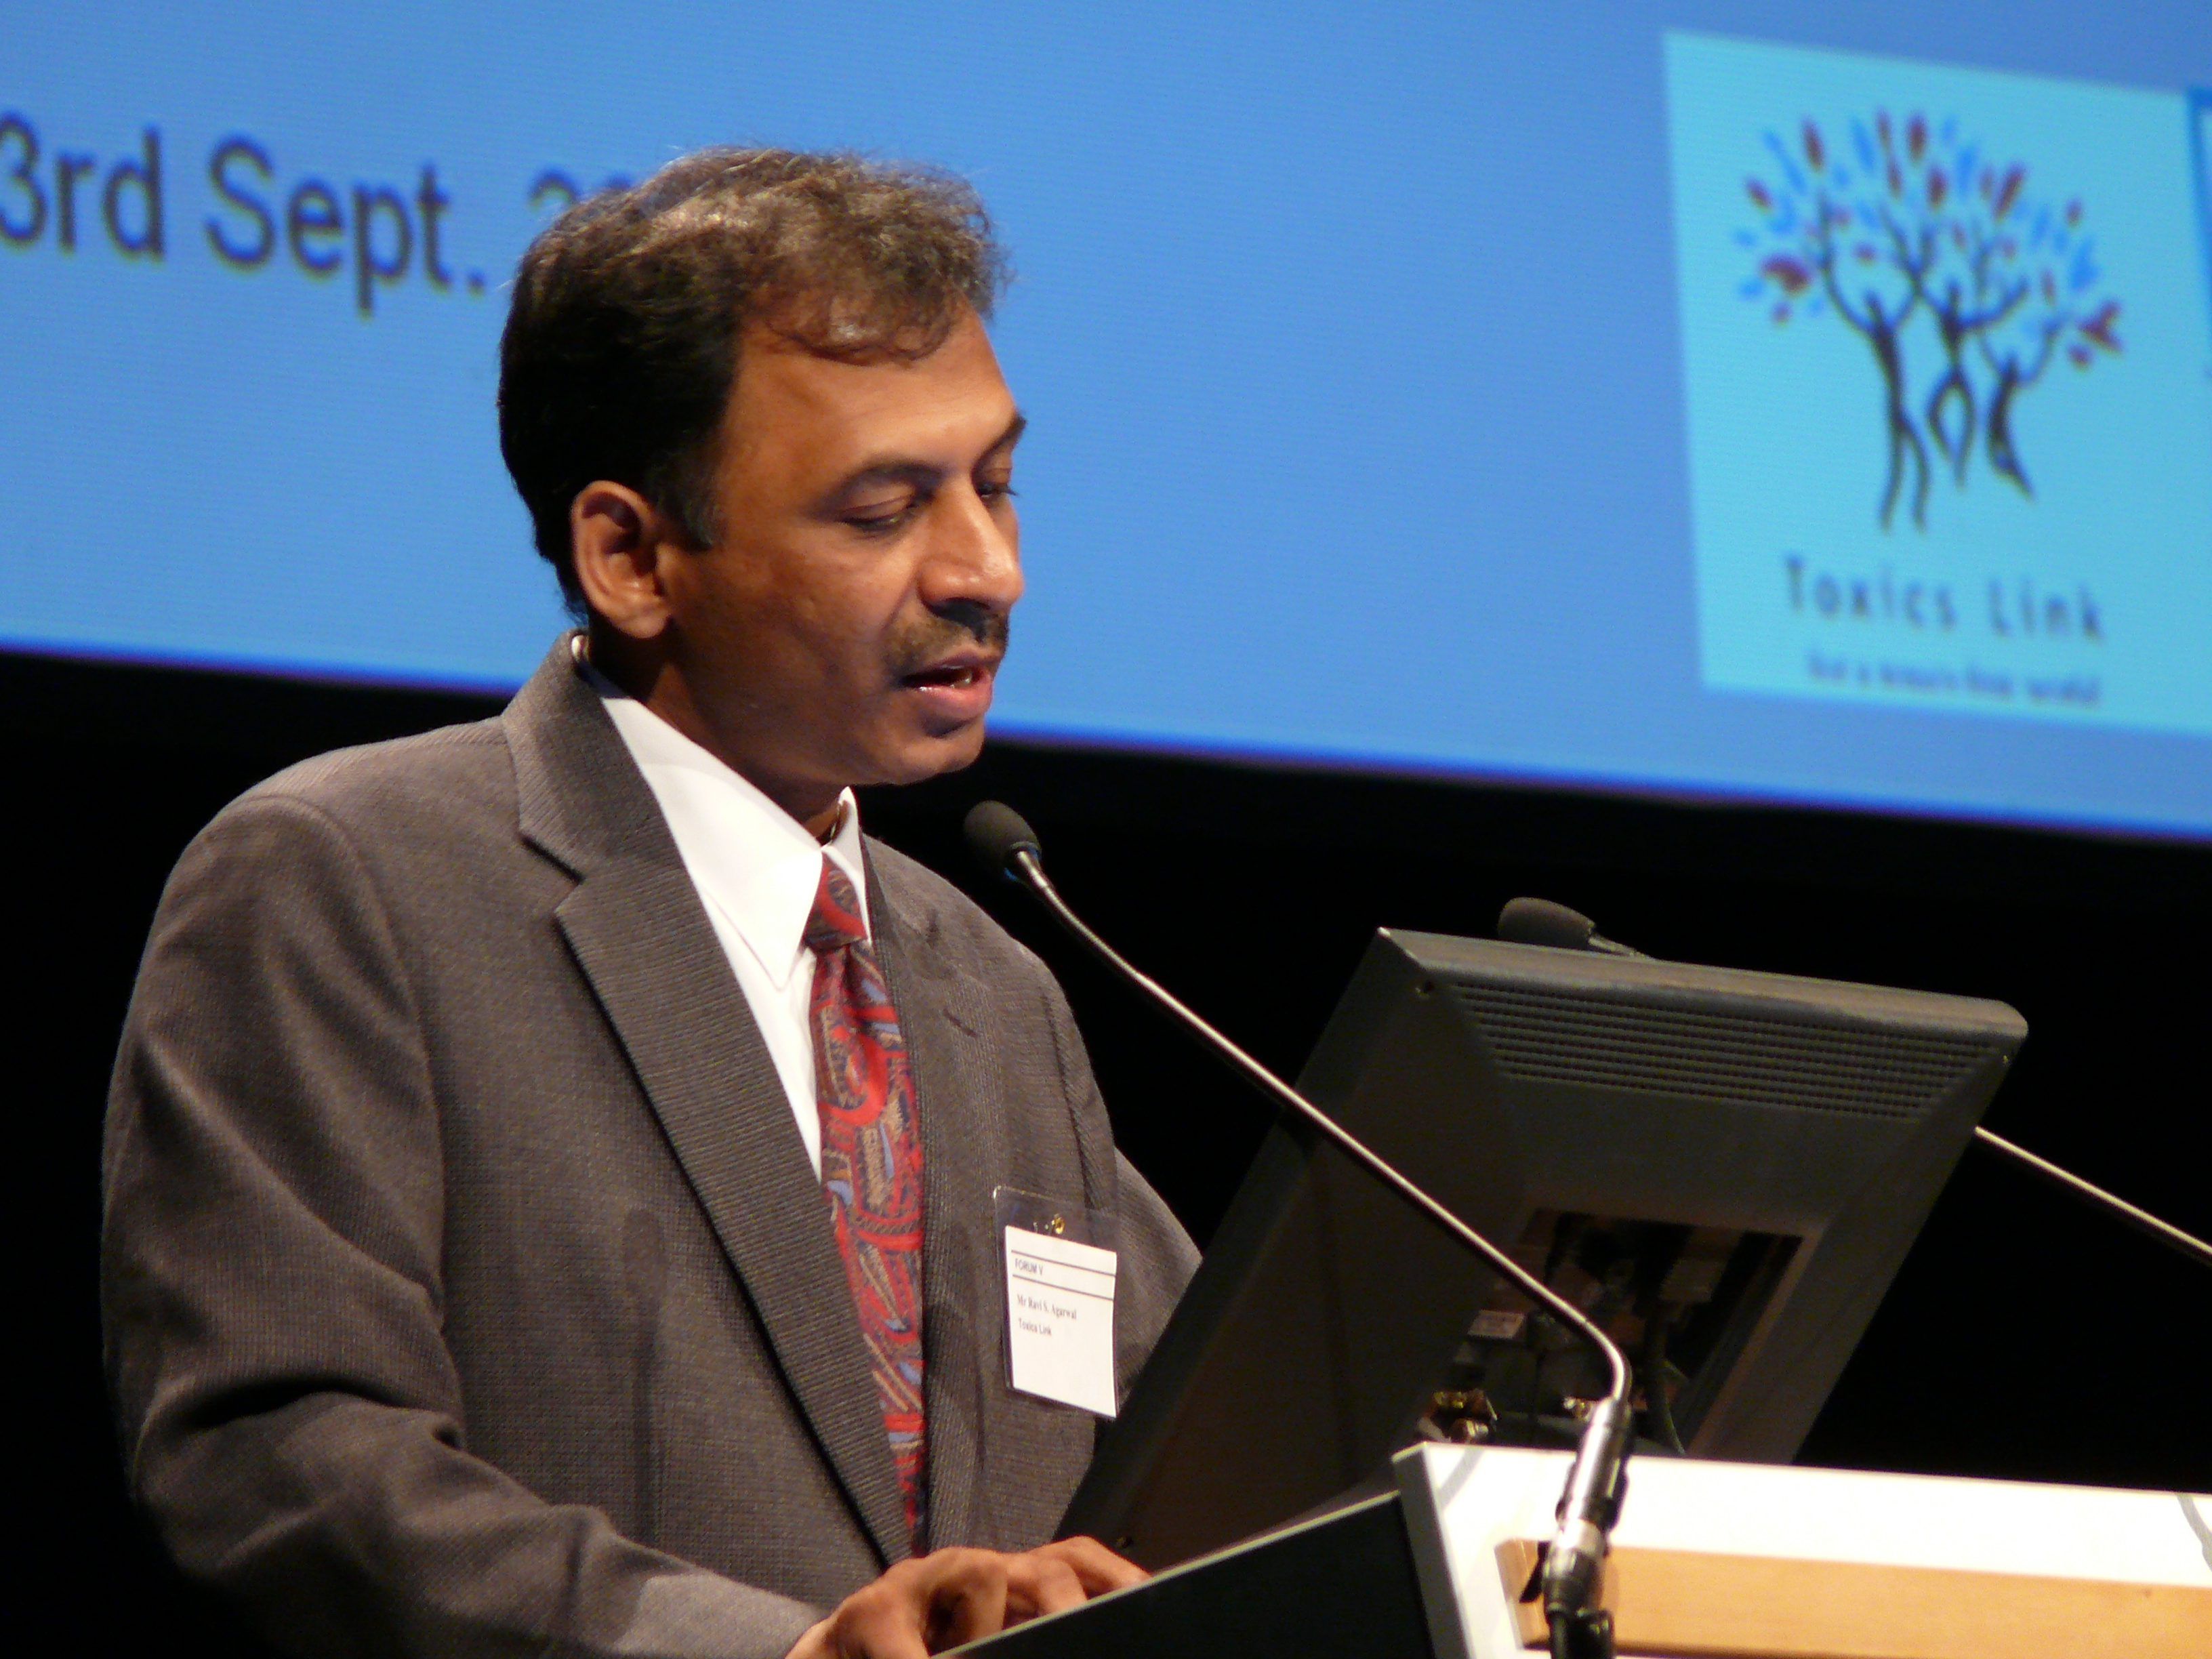 Ravi Agarwal making presentation at IFCS, Hungary 2006